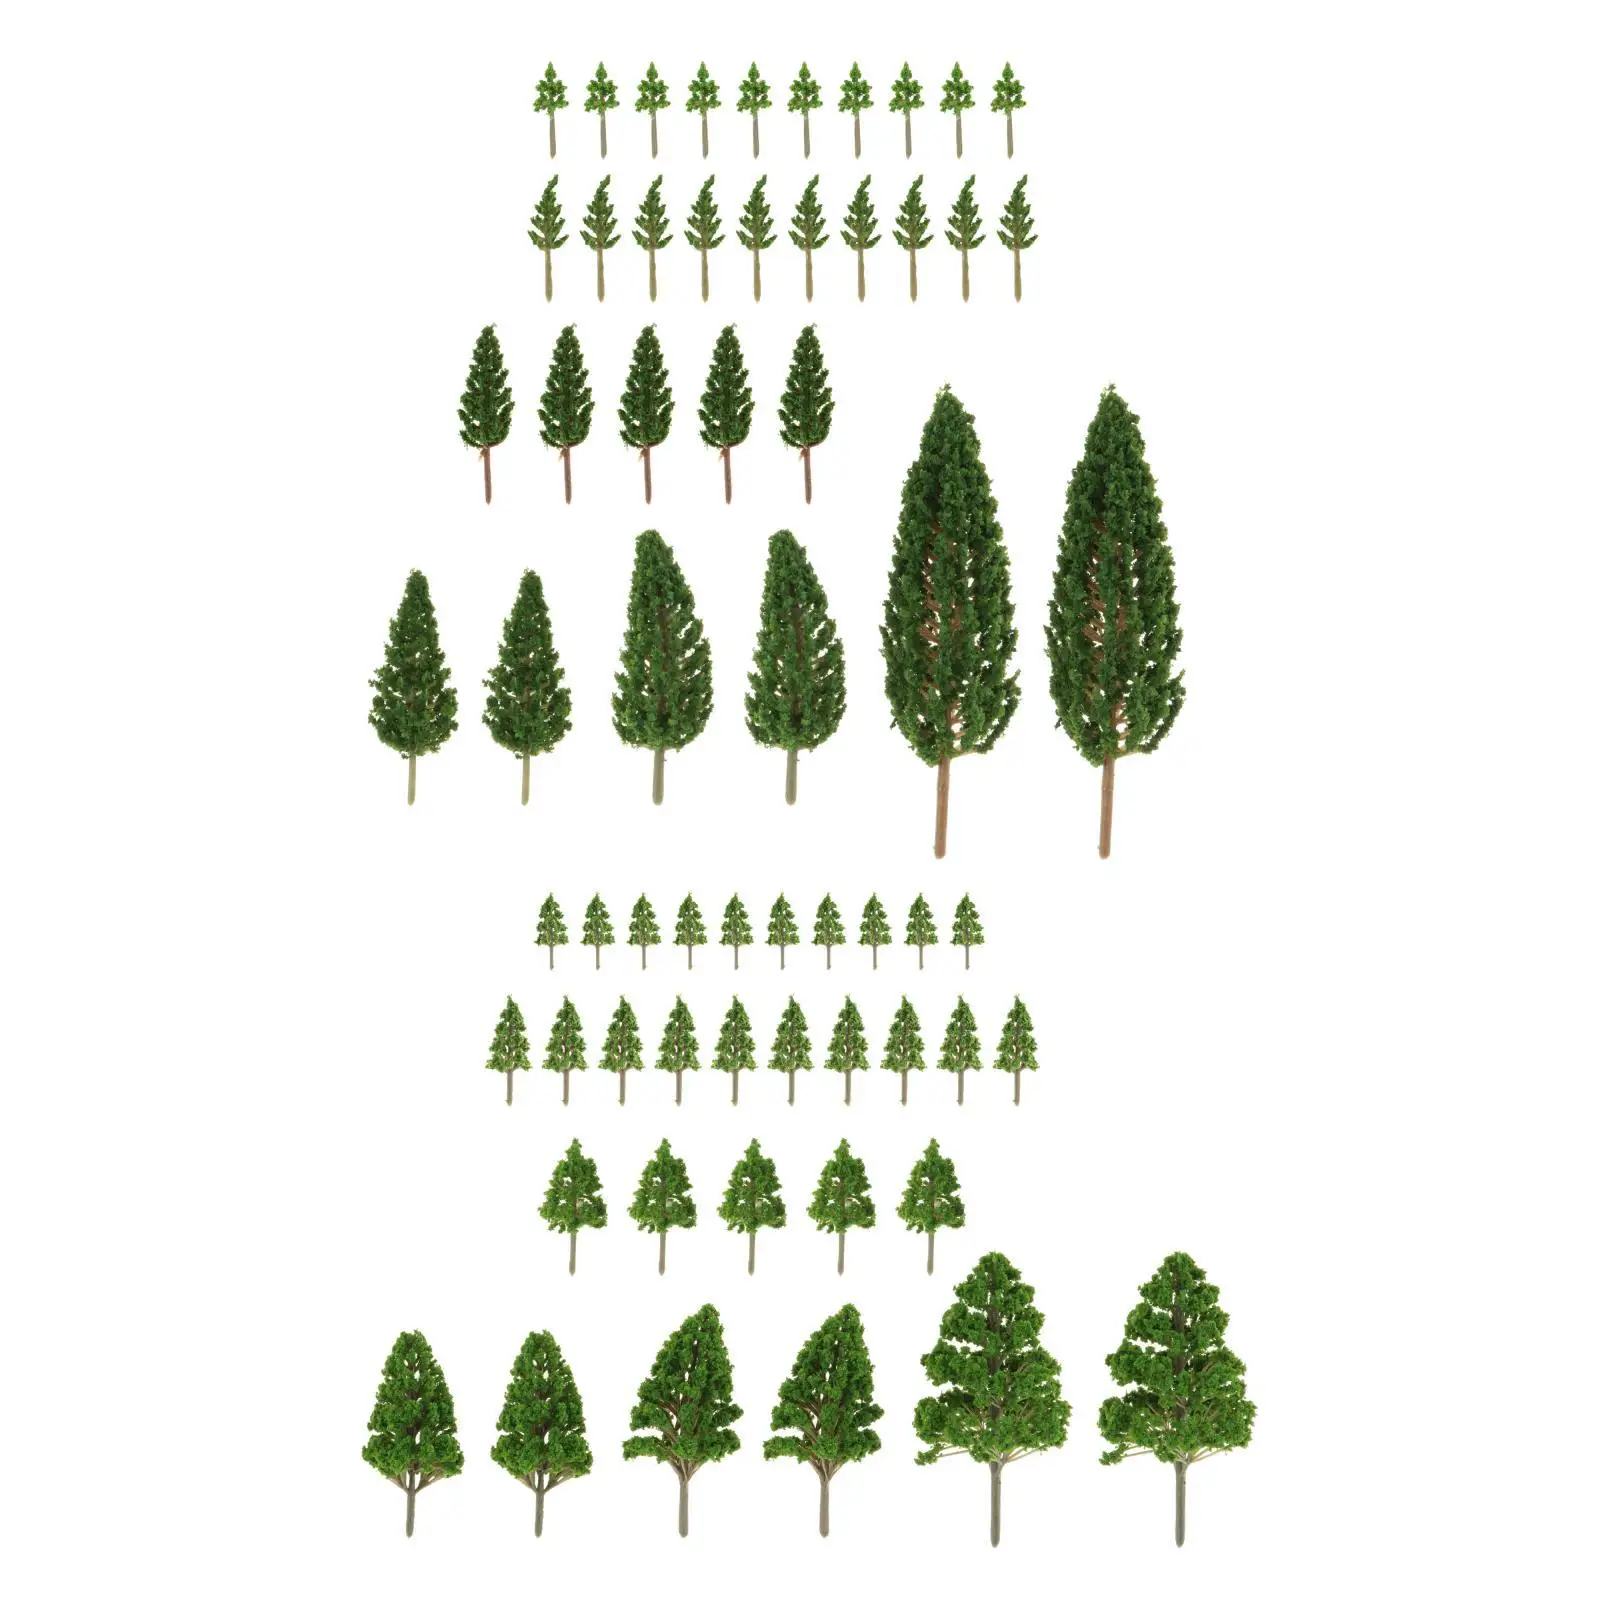 

Моделирование миниатюрного дерева 62x, искусственные деревья, модель железная дорога, Зеленый пейзаж, дерево для самостоятельной сборки, пейзаж, миниатюрный пейзаж